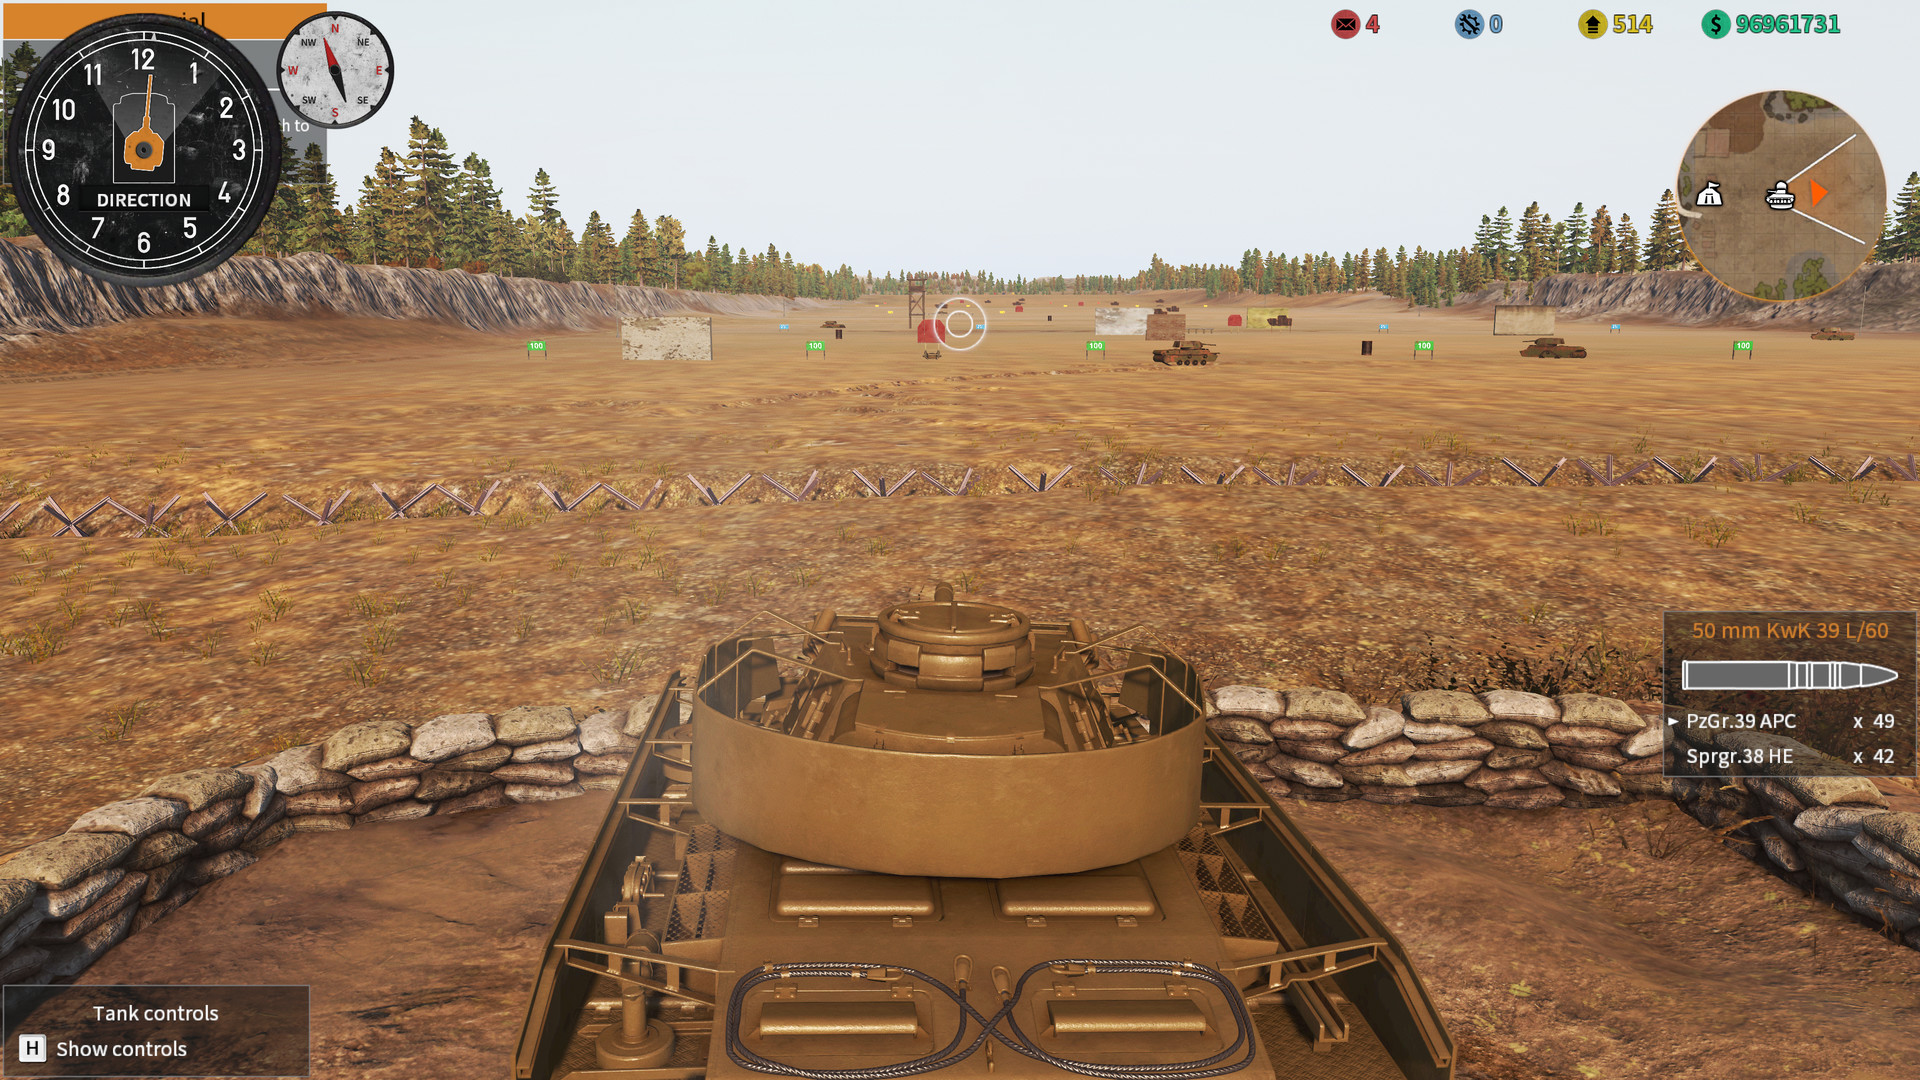 tank mechanic simulator achievements